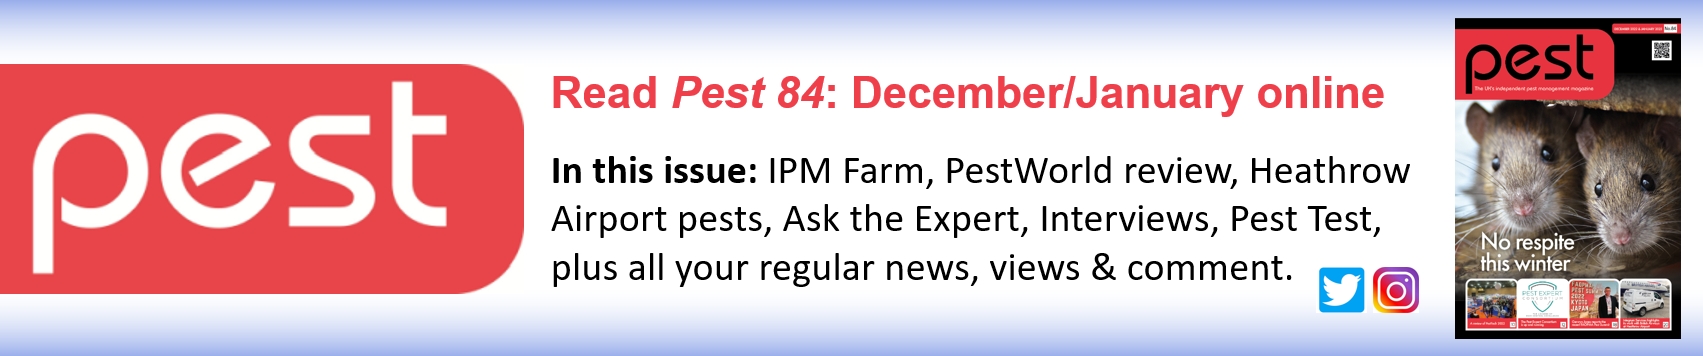 Pest 84 e-news top banner